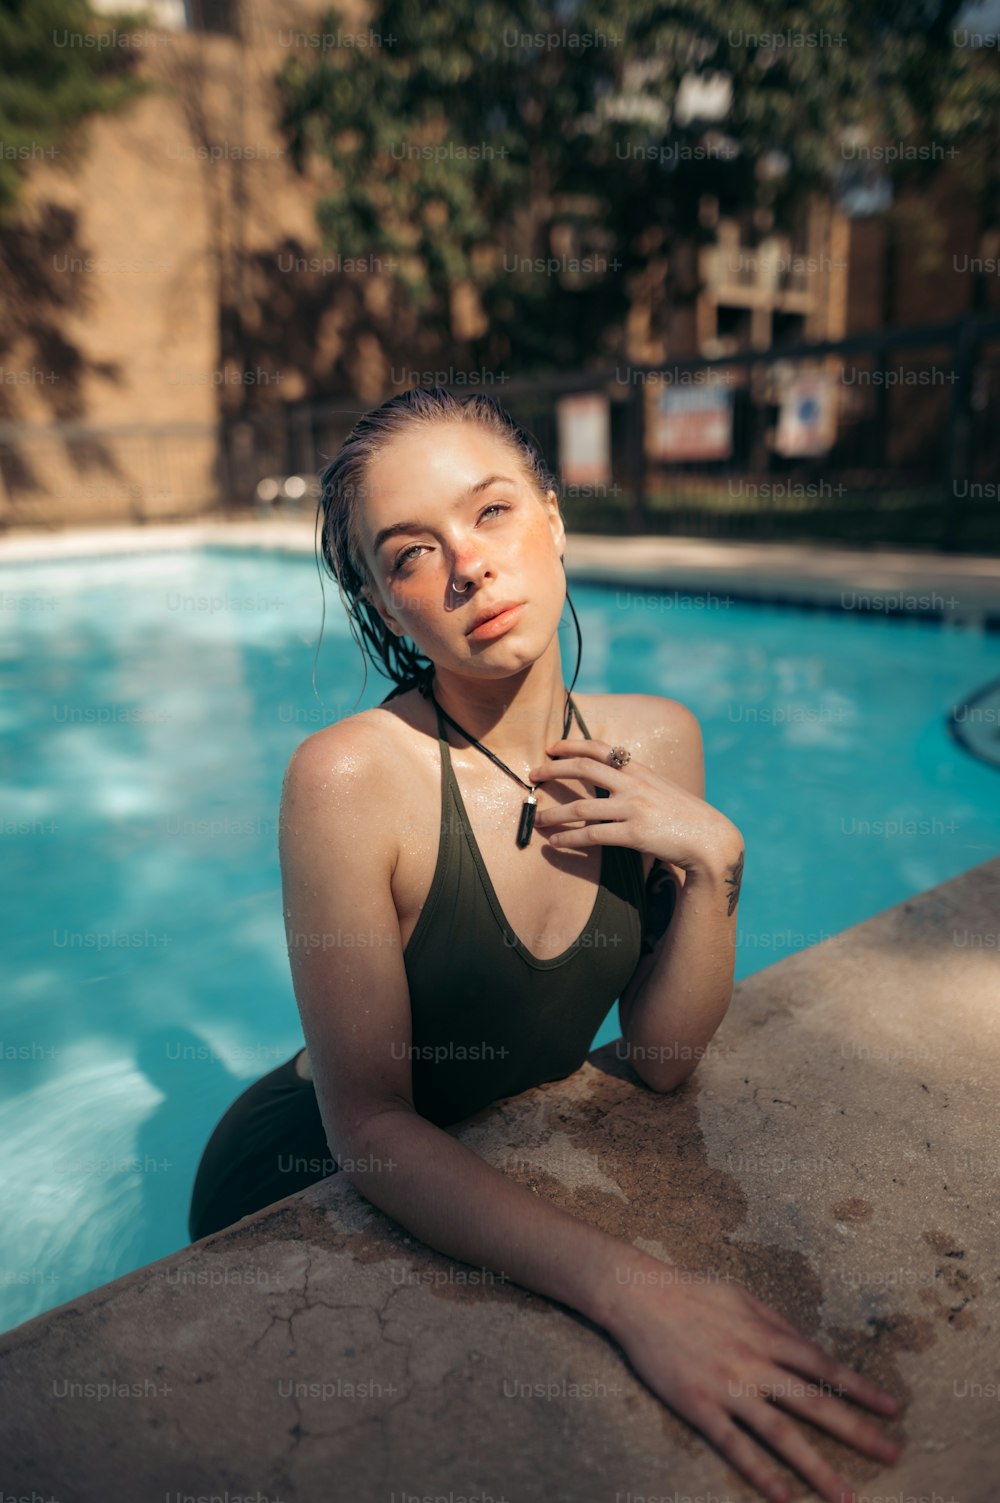 Eine Frau im Badeanzug sitzt neben einem Swimmingpool